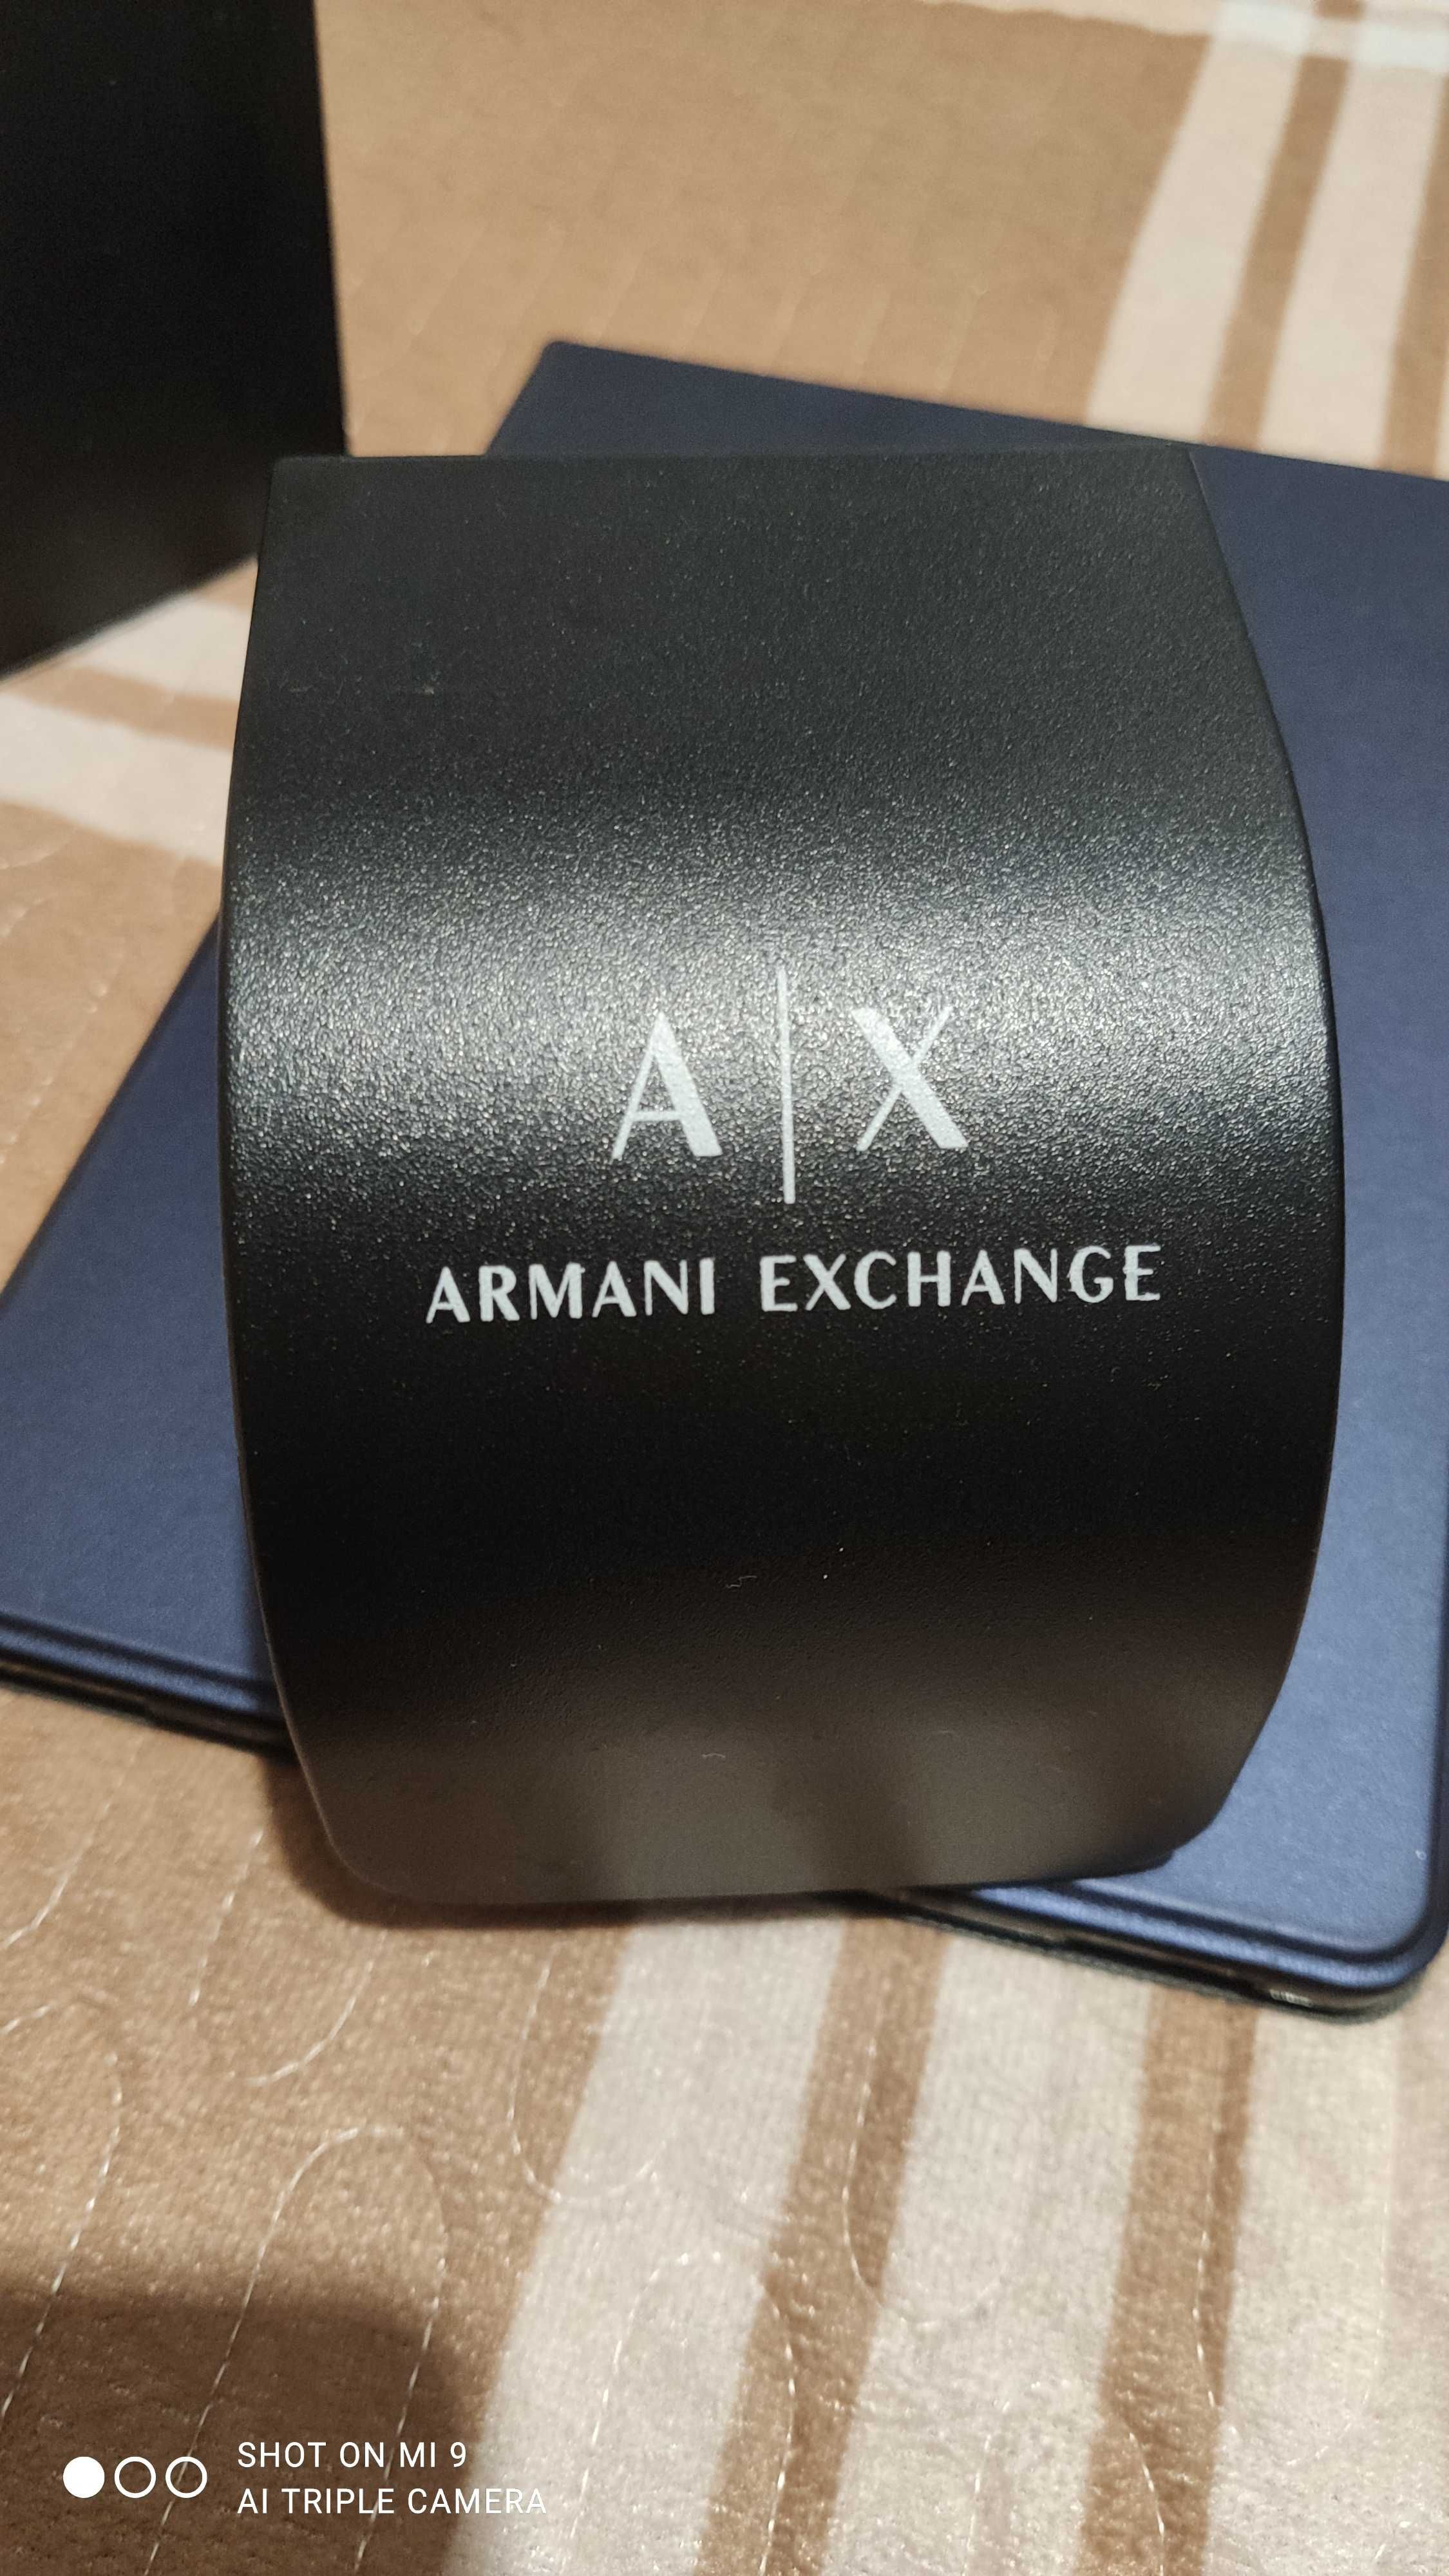 Часы Armani Exchange AX2719